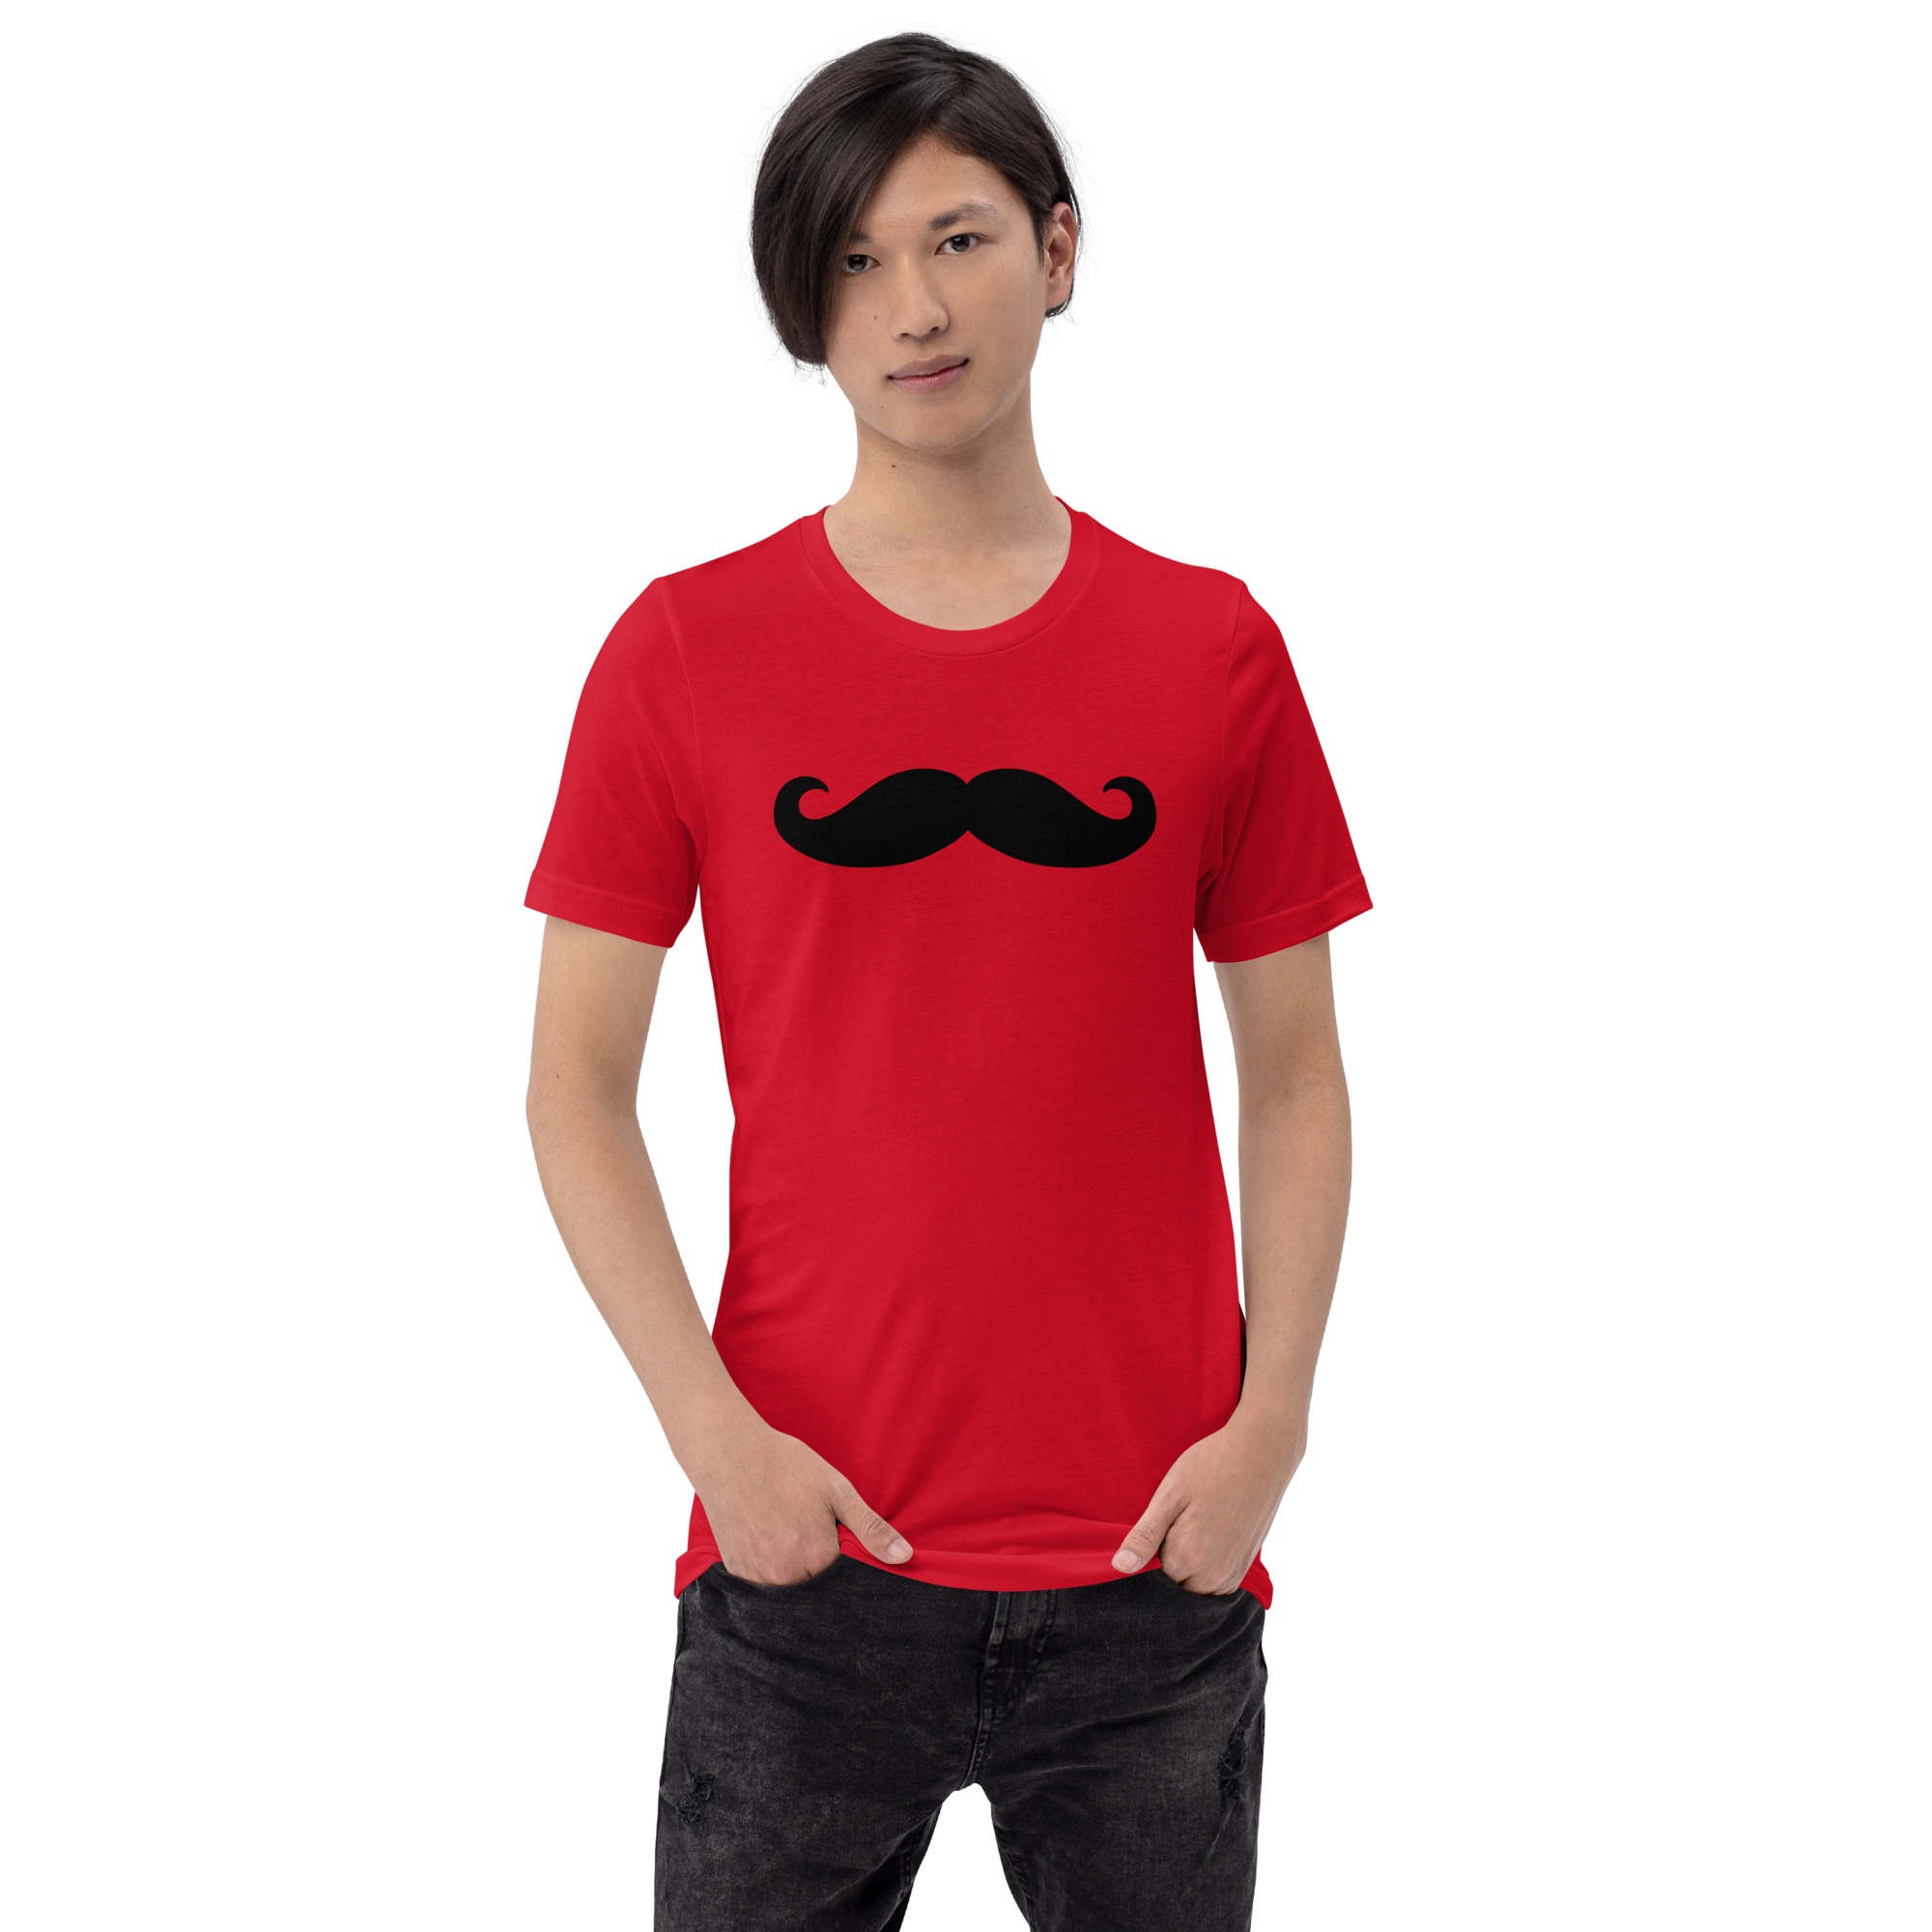 Mr. Mustache Ride